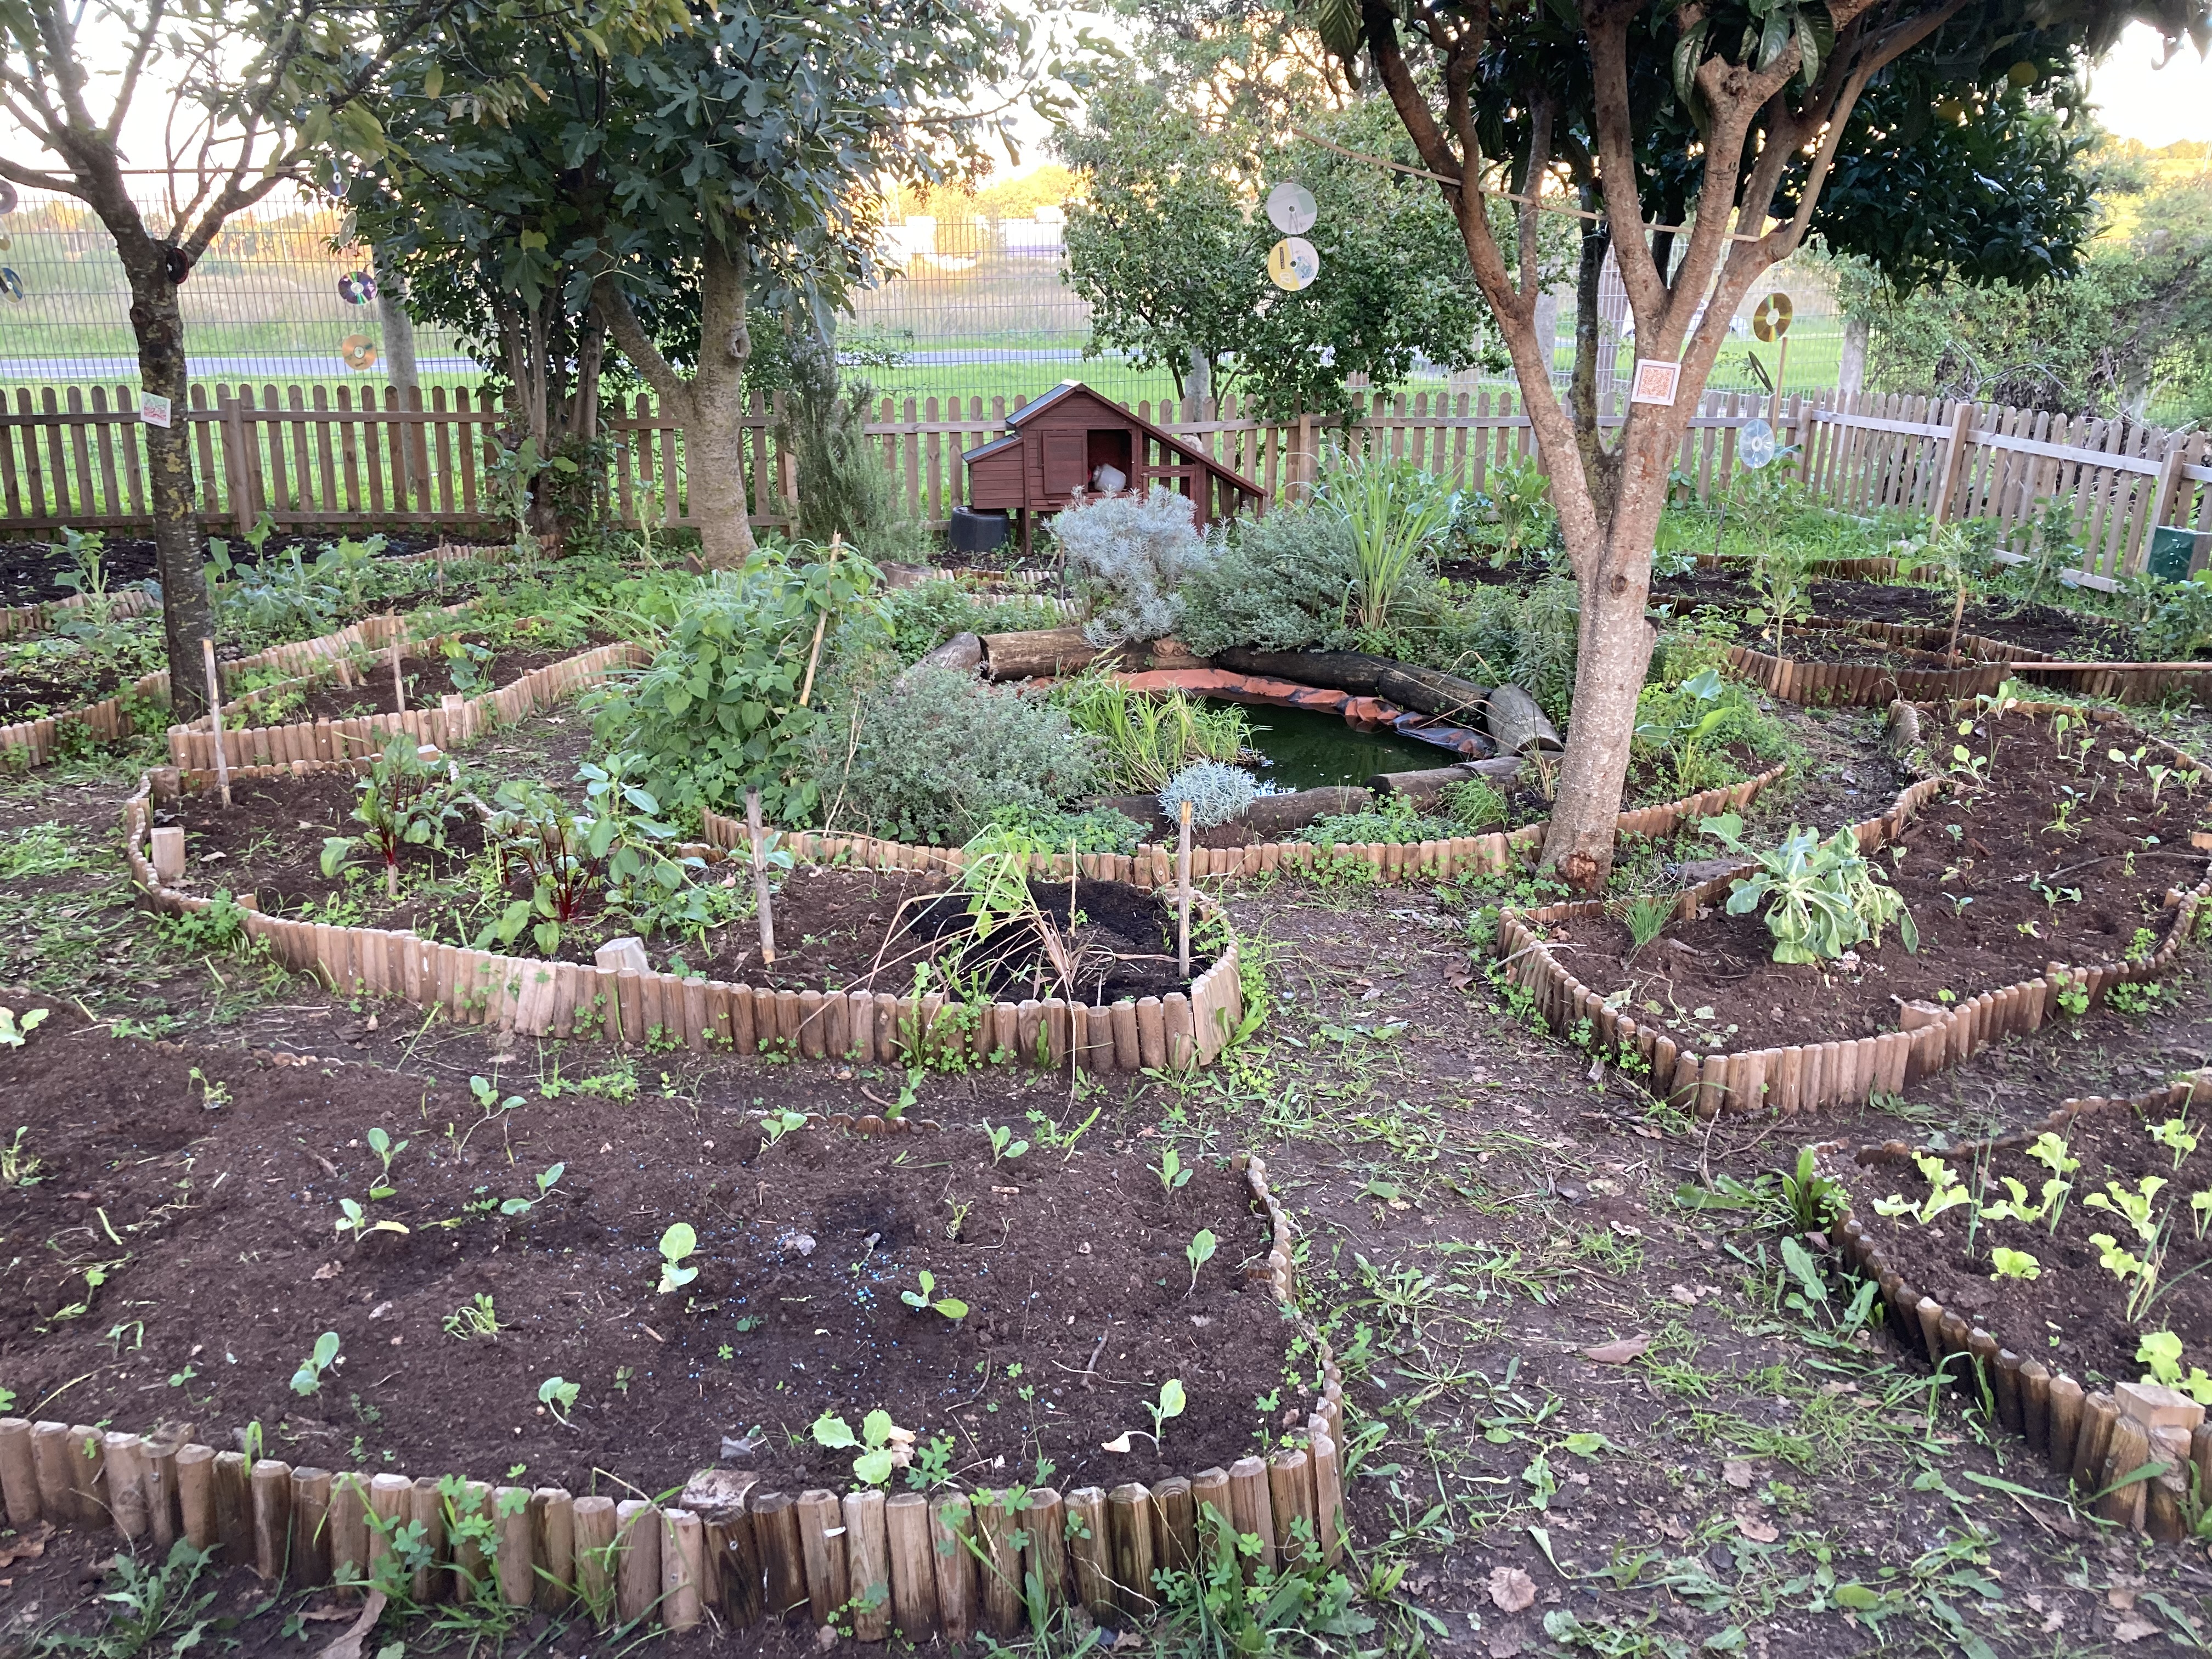 Plano da Horta em Mandala canteiros de hortícolas em consorciação canteiro de ervas aromáticas tb em consorciação e charco da horta no centro.